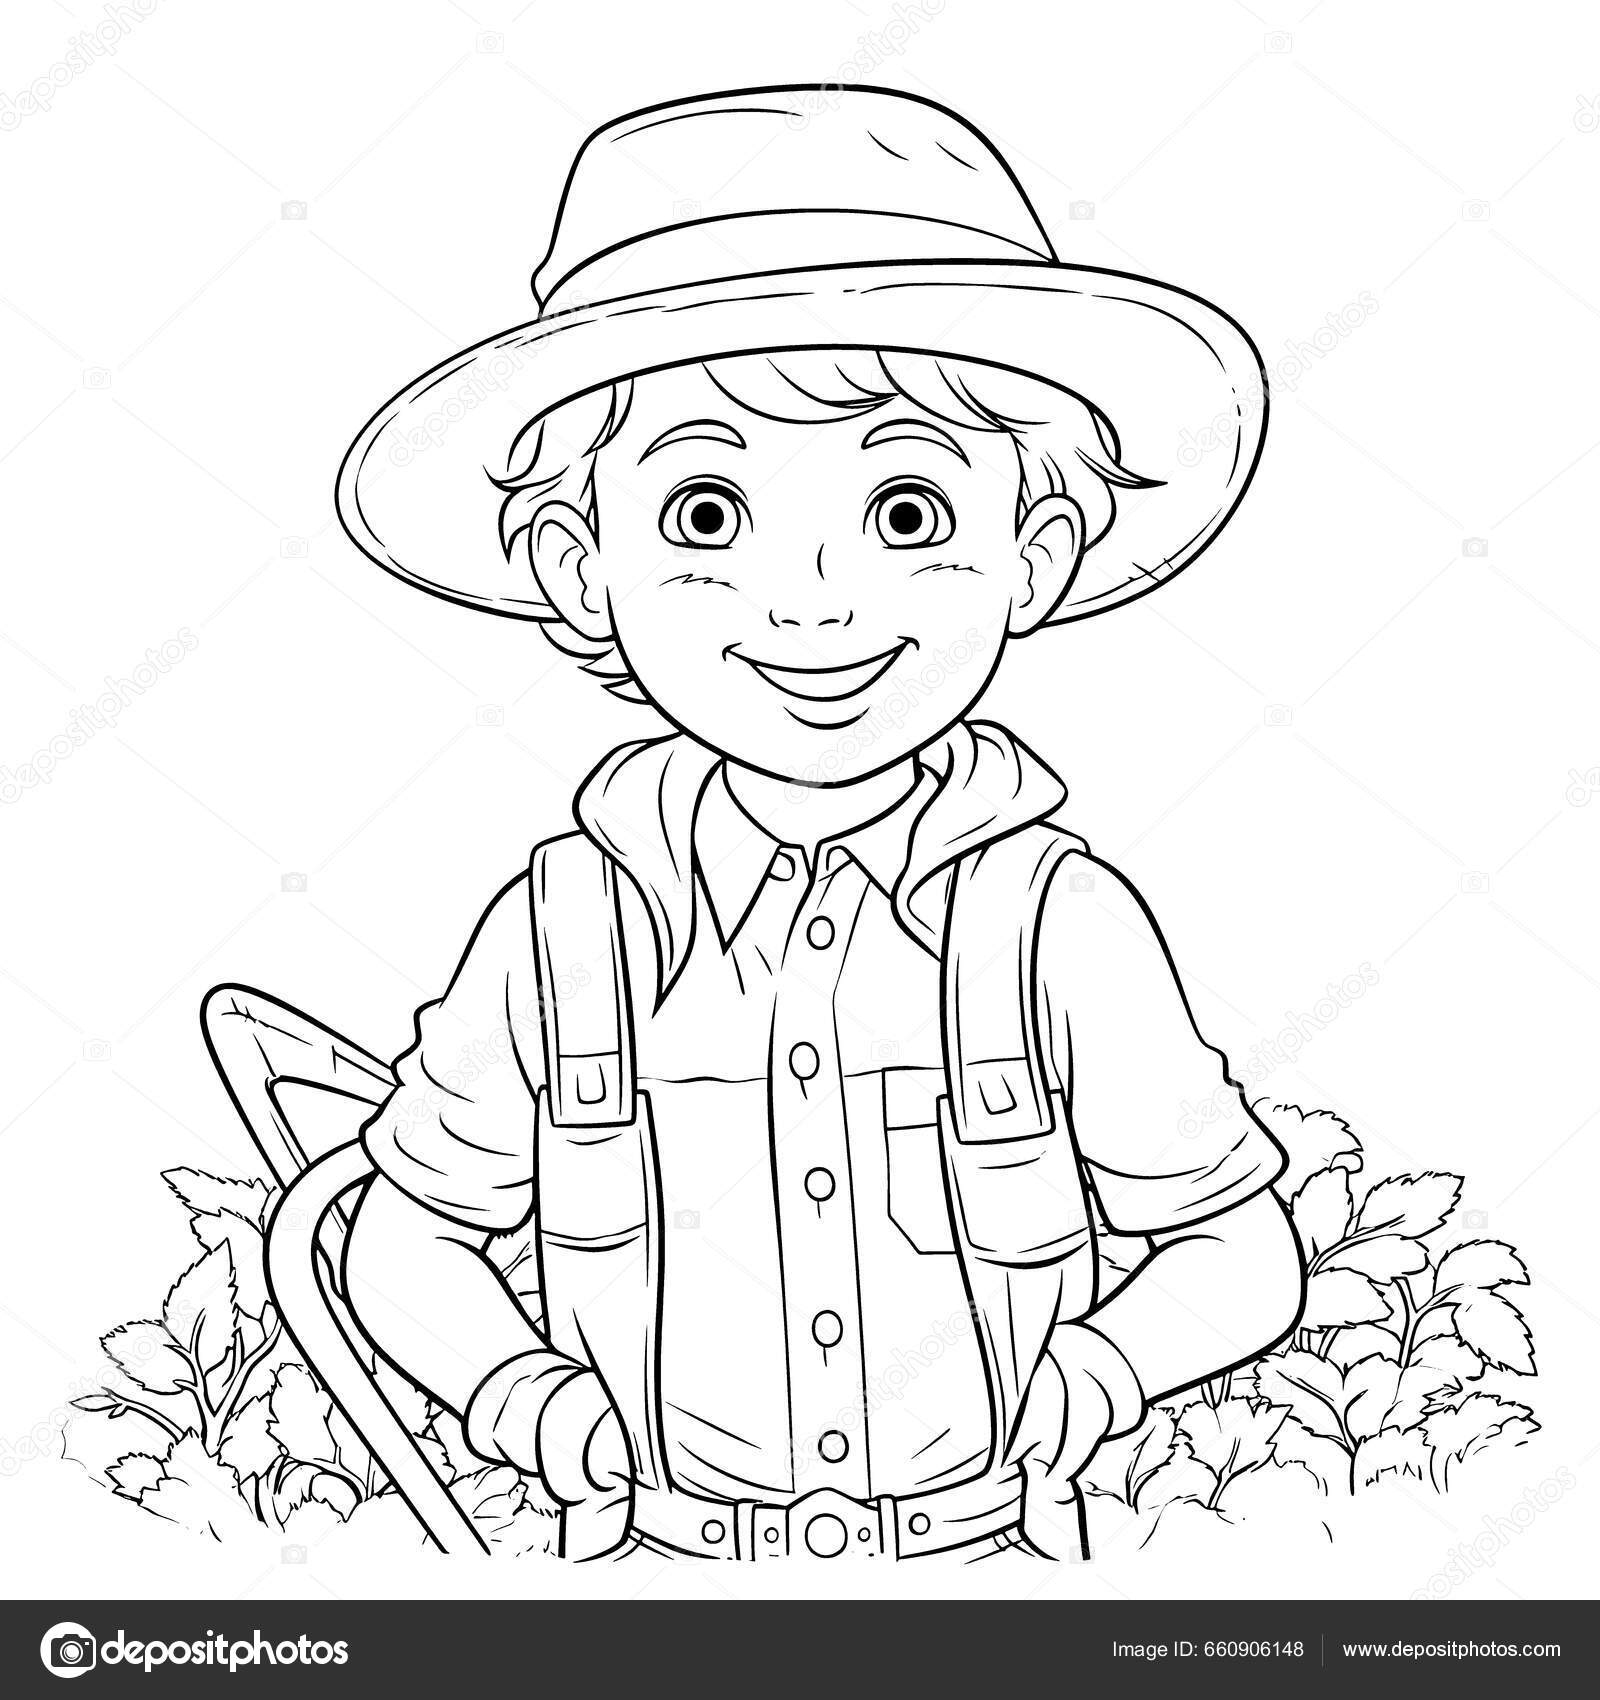 Desenho e Imagem Trator Agricultor para Colorir e Imprimir Grátis para  Adultos e Crianças 